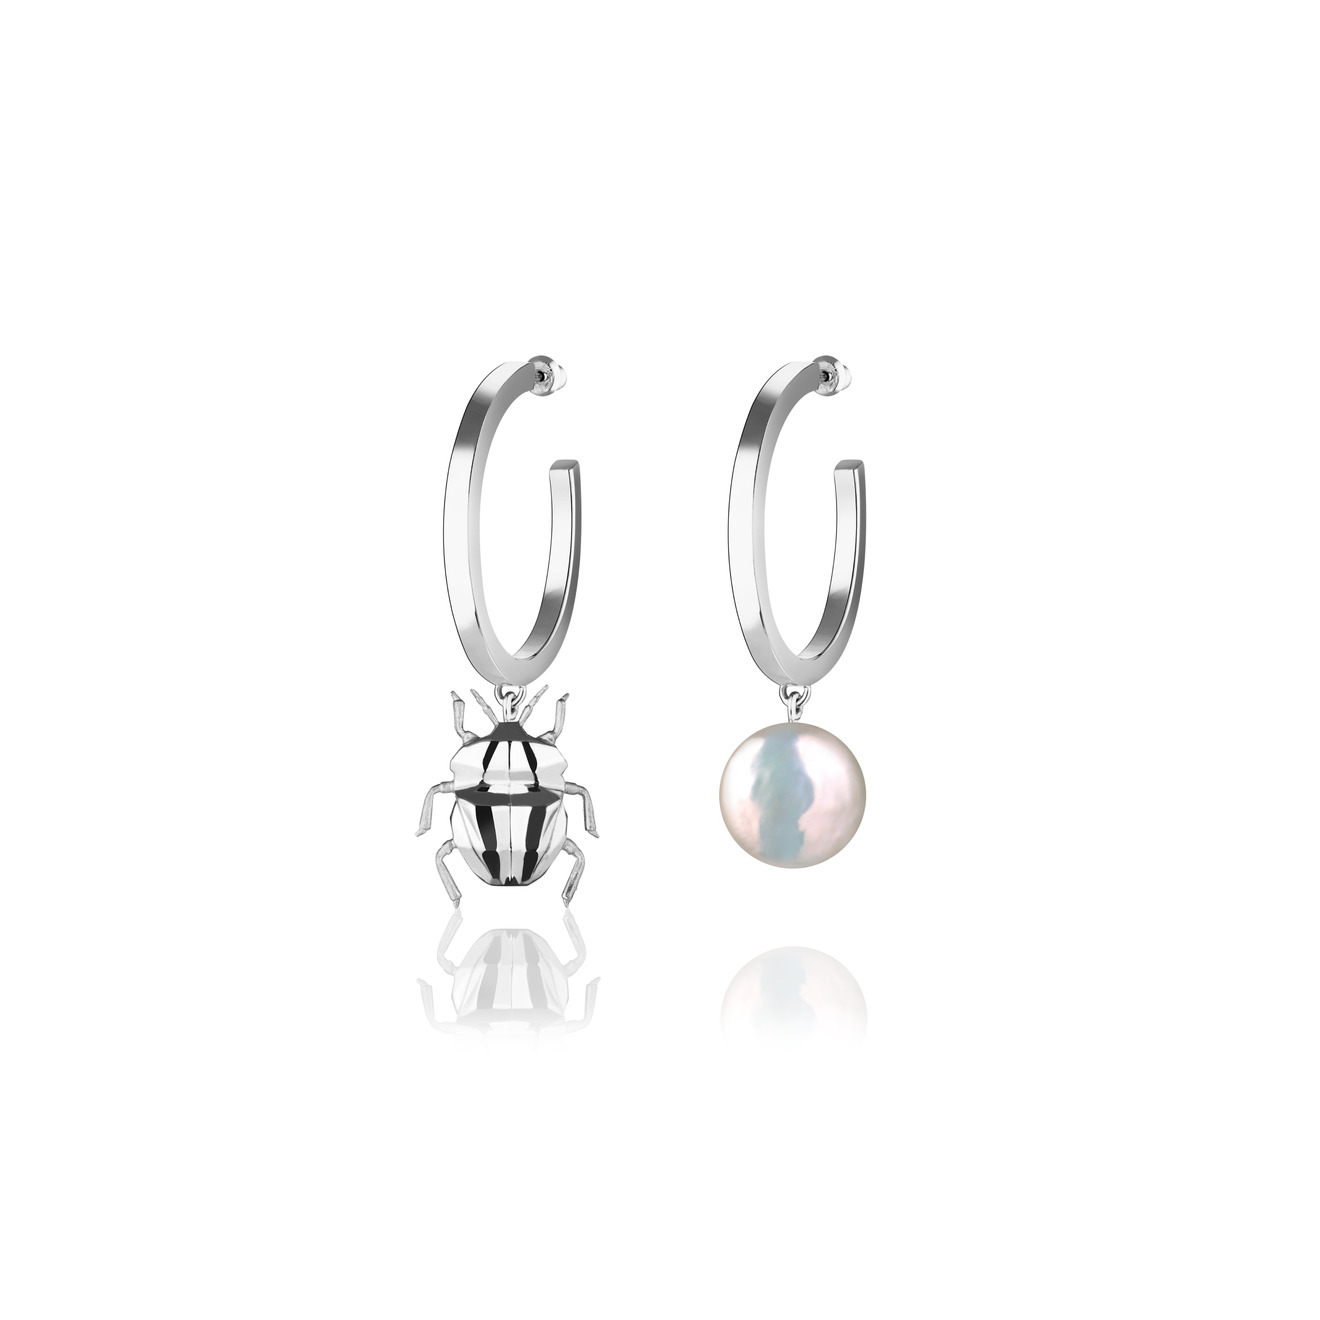 Vertigo Jewellery Lab Асимметричные серьги из серебра BUG с жемчугом vertigo jewellery lab позолоченный браслет bug pearl из серебра с жемчугом